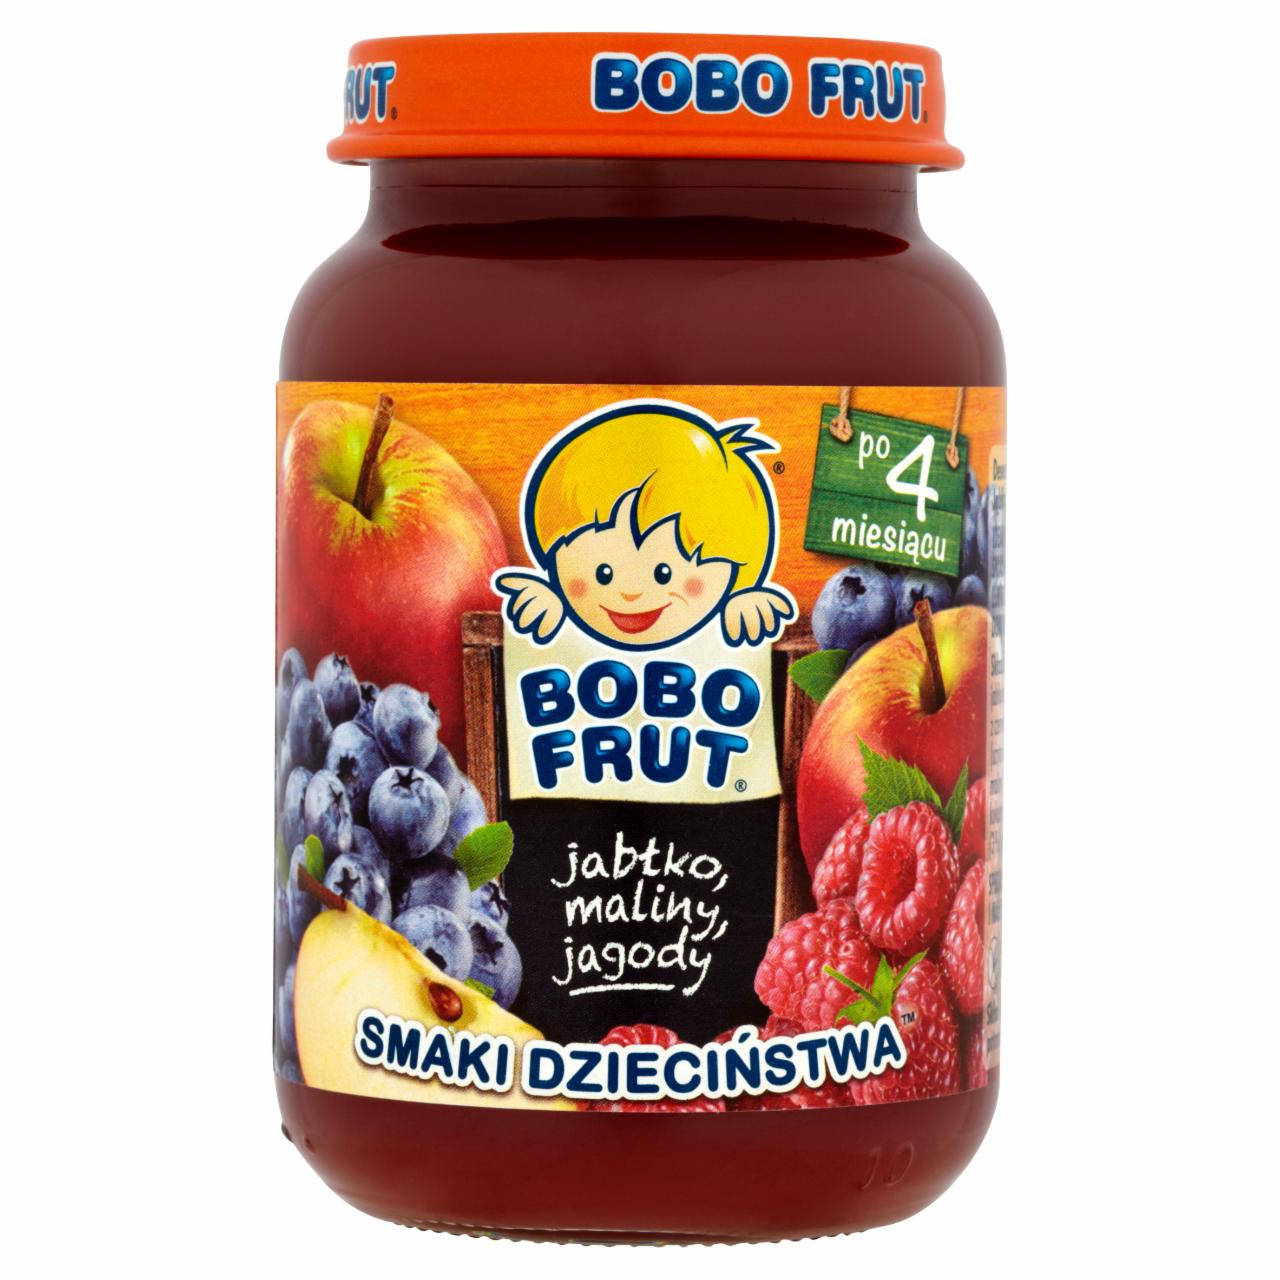 Zdjęcia - Bobo Frut Smaki Dzieciństwa Jabłko maliny jagody po 4 miesiącu 185 g